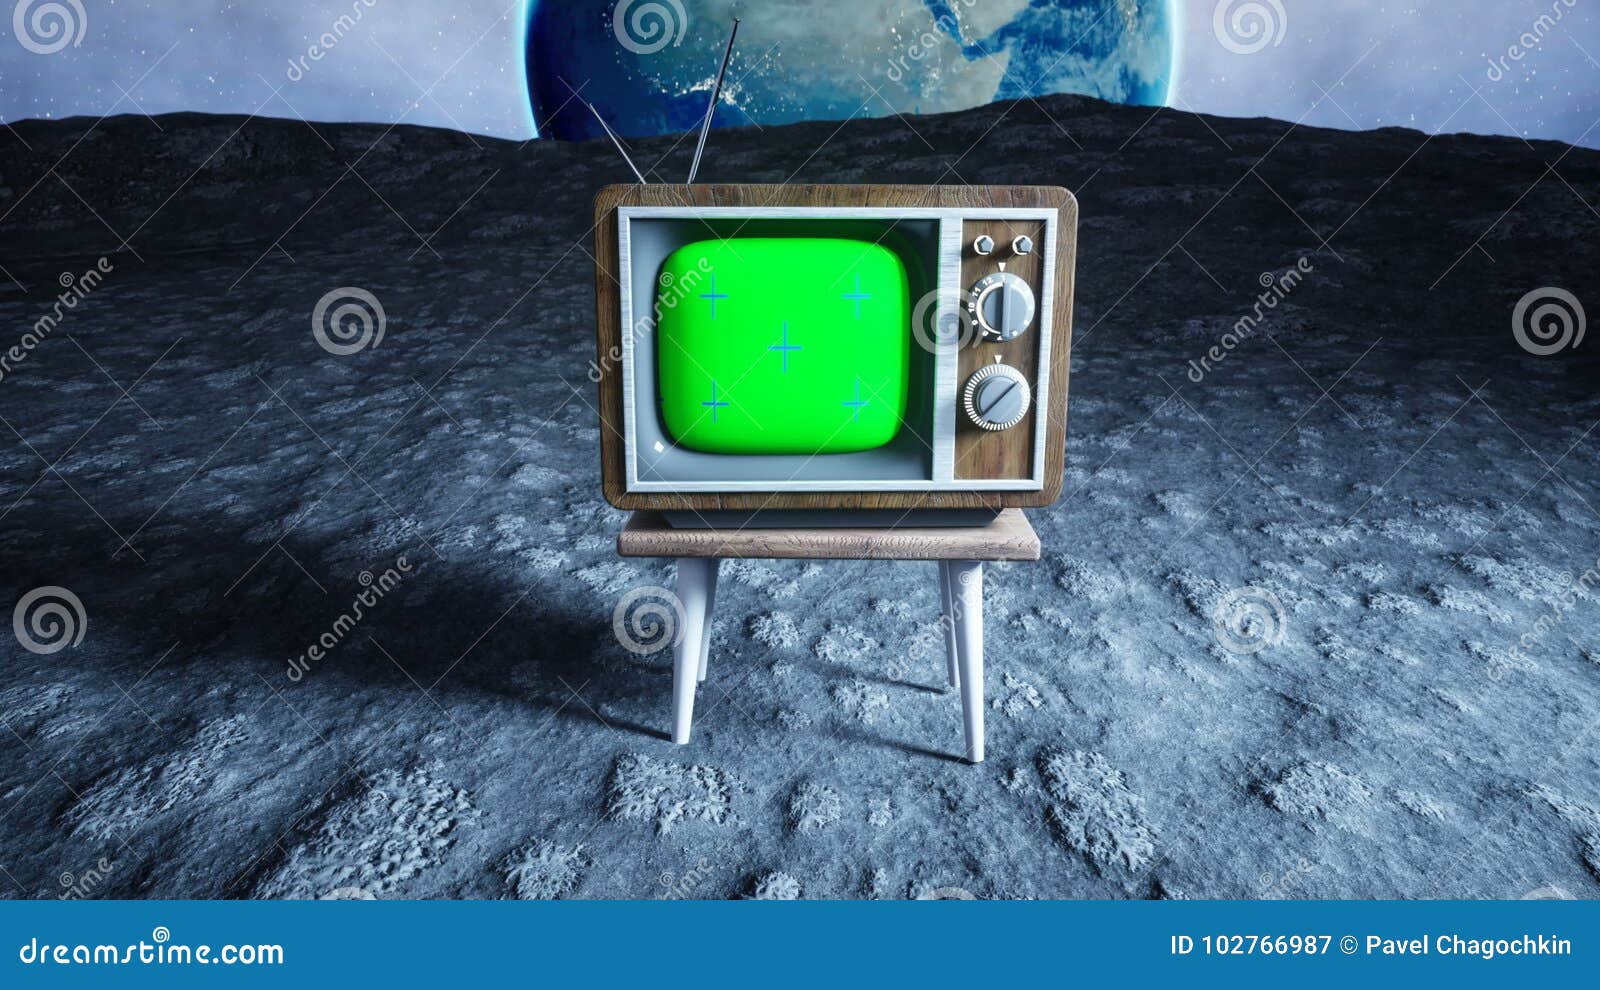 Bạn có bao giờ tưởng tượng một chiếc TV cổ gỗ đặt trên mặt trăng chưa? Hình ảnh này sẽ khiến bạn trở về thập niên 70 với cảm giác thân quen và đầy kỷ niệm. Hãy nhấn play và cùng khám phá vẻ đẹp của chiếc TV này trên mặt trăng.